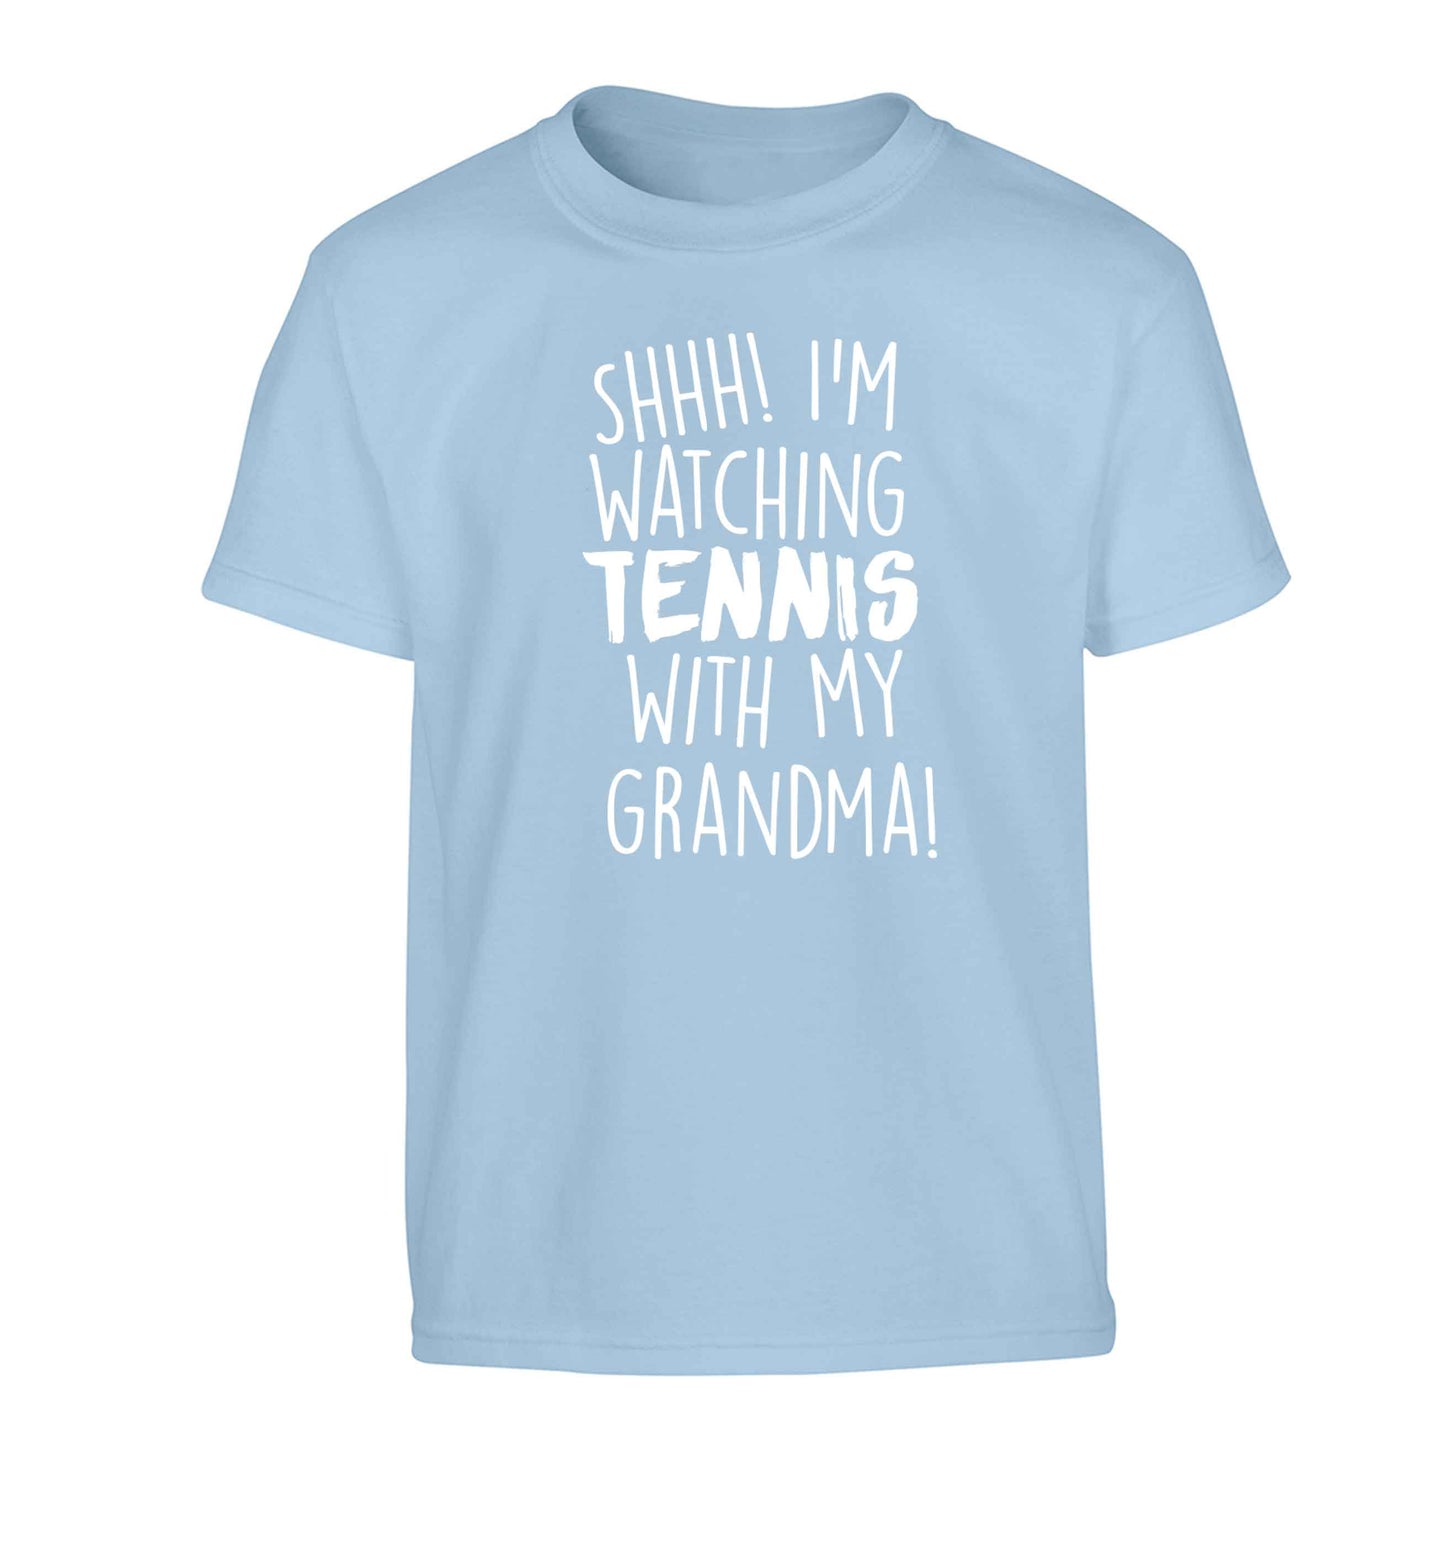 Shh! I'm watching tennis with my grandma! Children's light blue Tshirt 12-13 Years